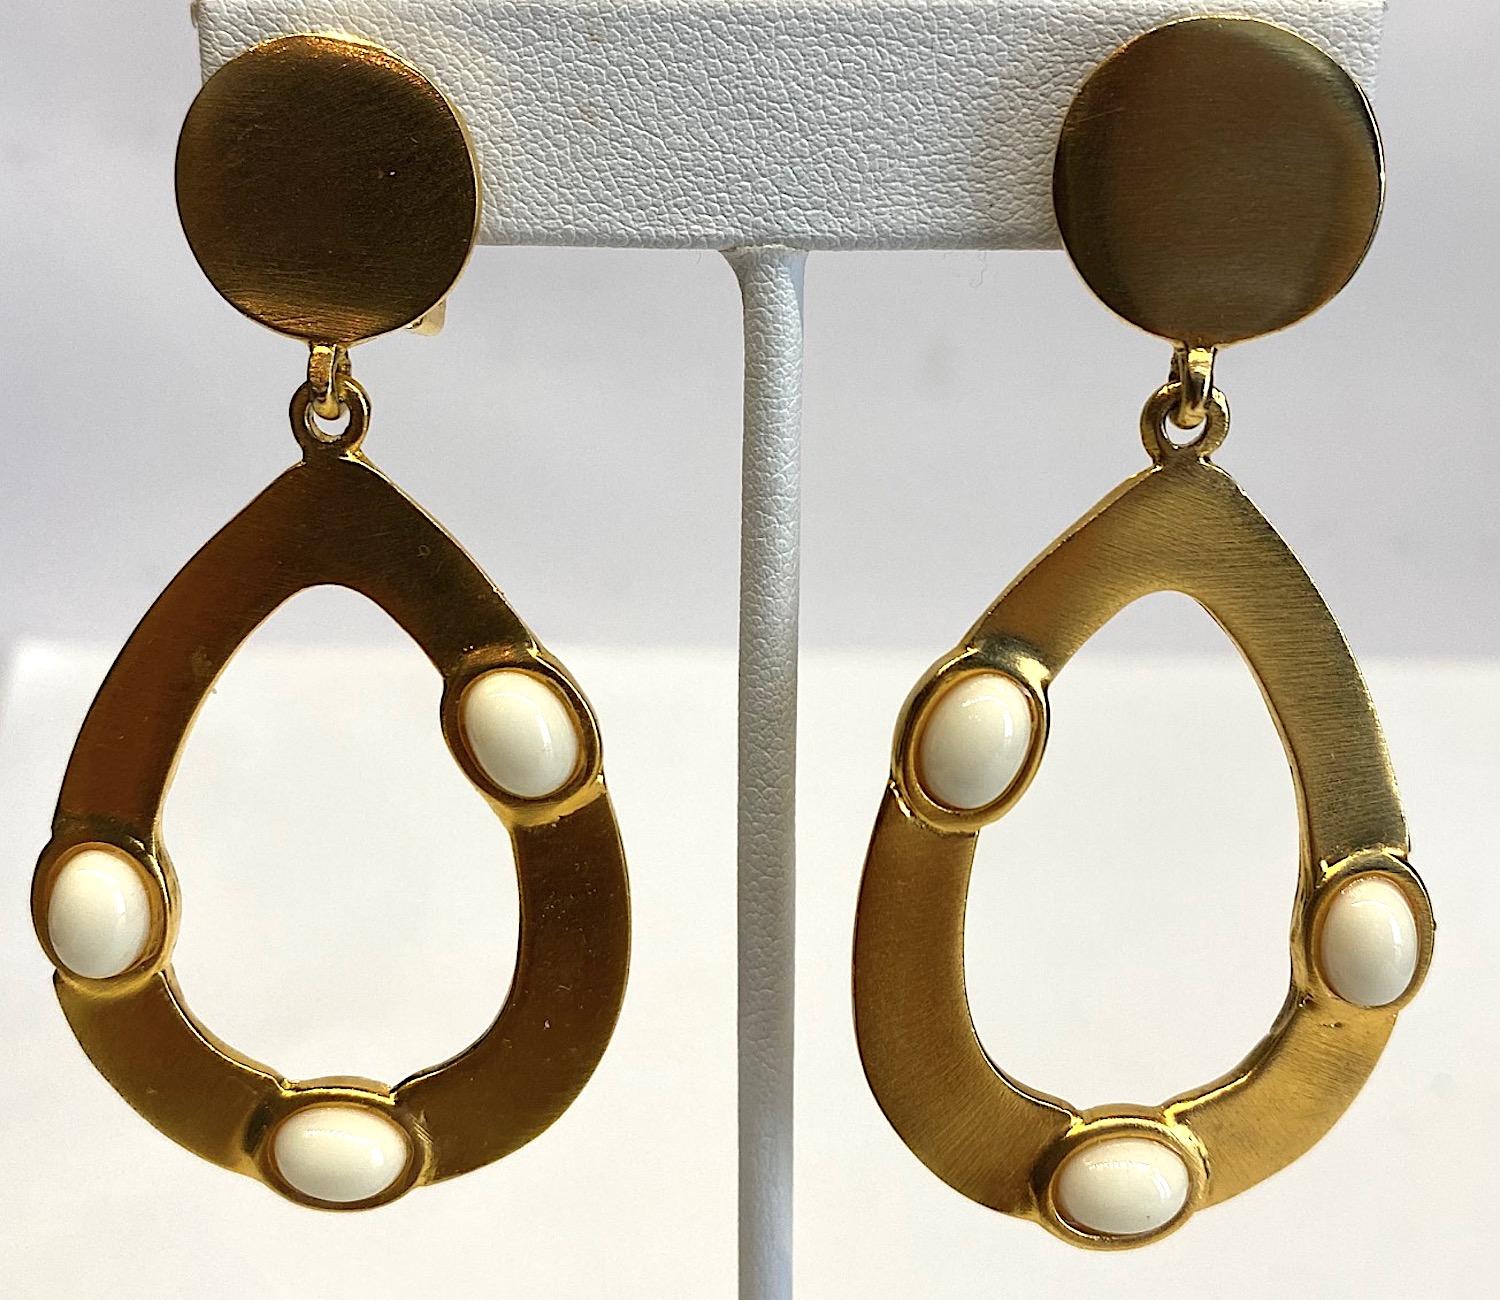 Boucles d'oreilles en or satiné Kenneth Lane des années 1980 avec pendentifs en forme de poire et cabochons ovales blancs. Chaque boucle d'oreille mesure 1,38 pouce de large et 2,75 pouces de long. Le bouton rond supérieur est doté d'un clip arrière